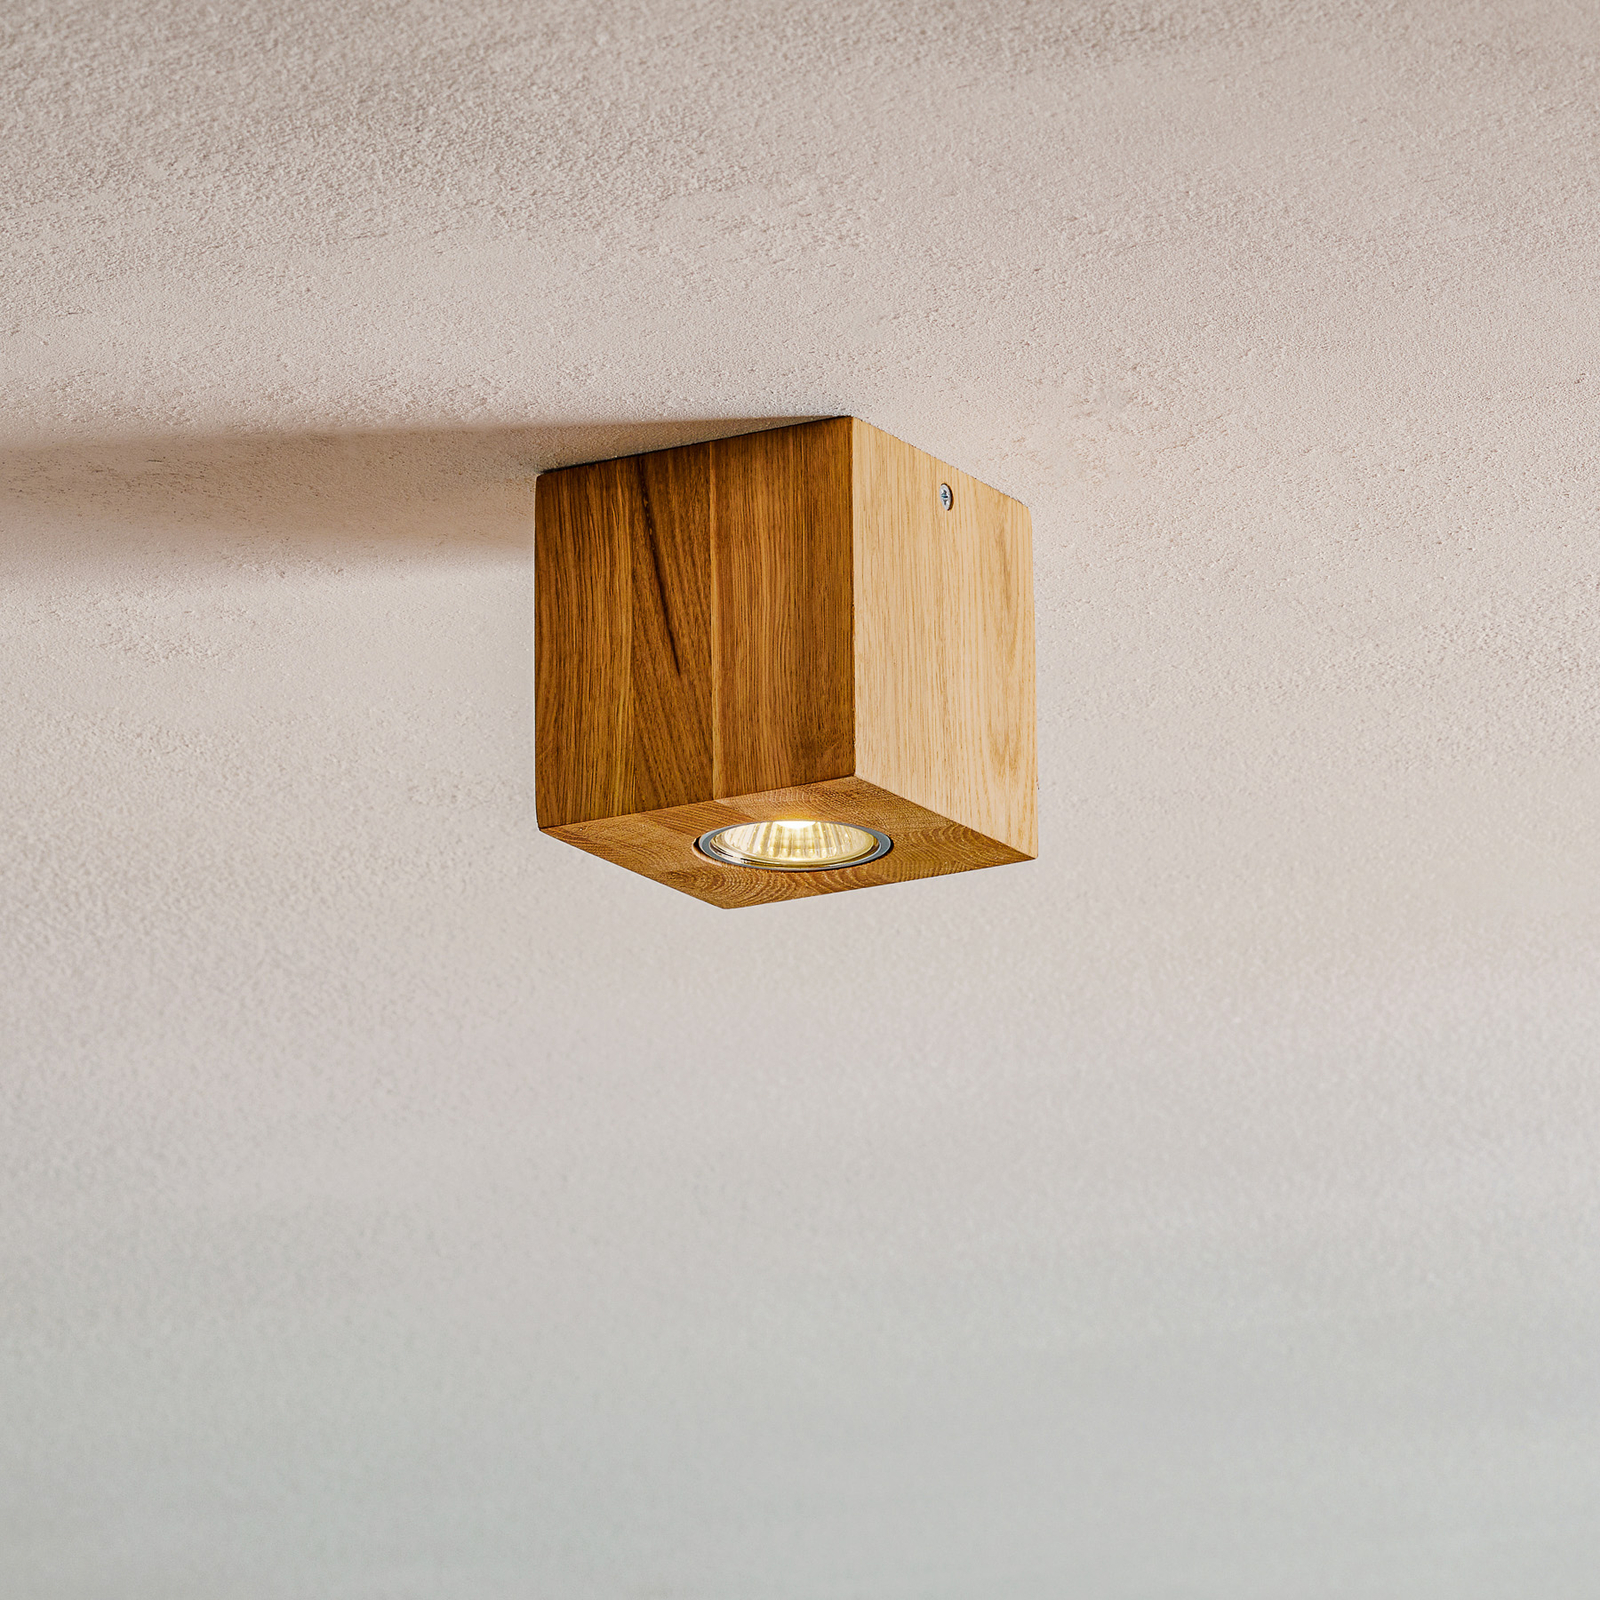 Lampa sufitowa Wooddream 1-pkt. dąb, kątowa, 10cm